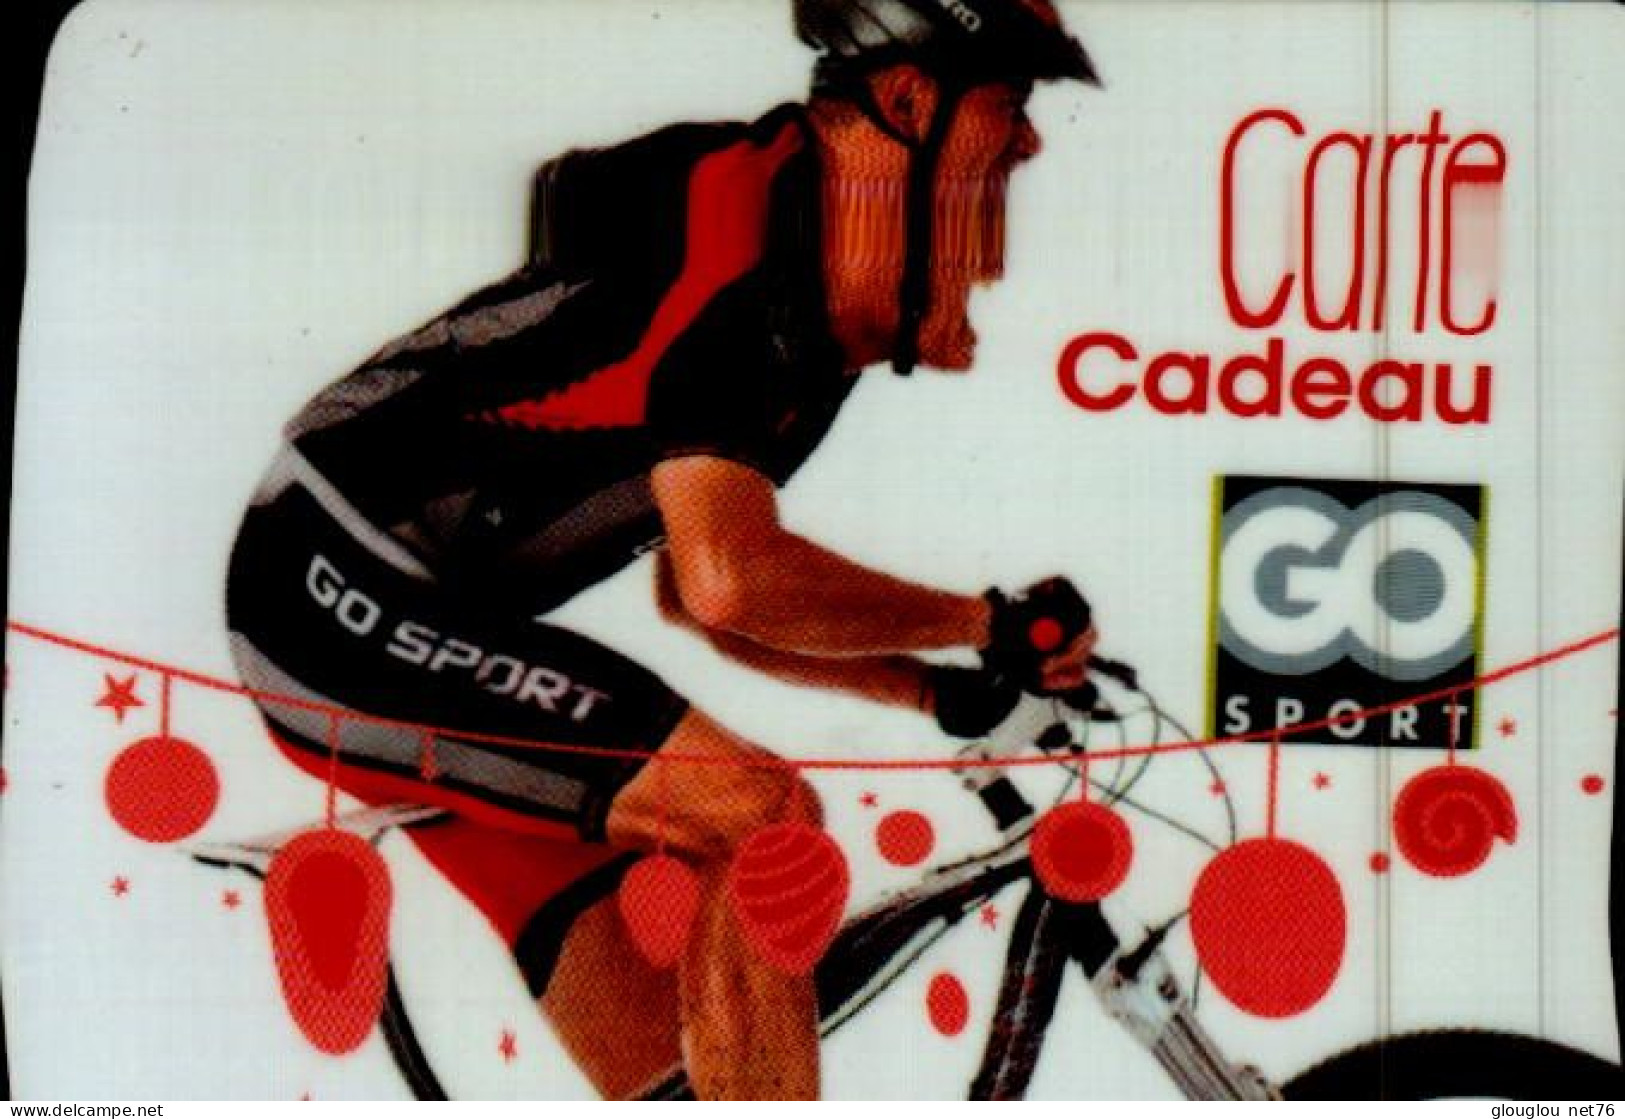 CARTE CADEAU...GO SPORT...CYCLISTE - Tarjetas De Fidelización Y De Regalo